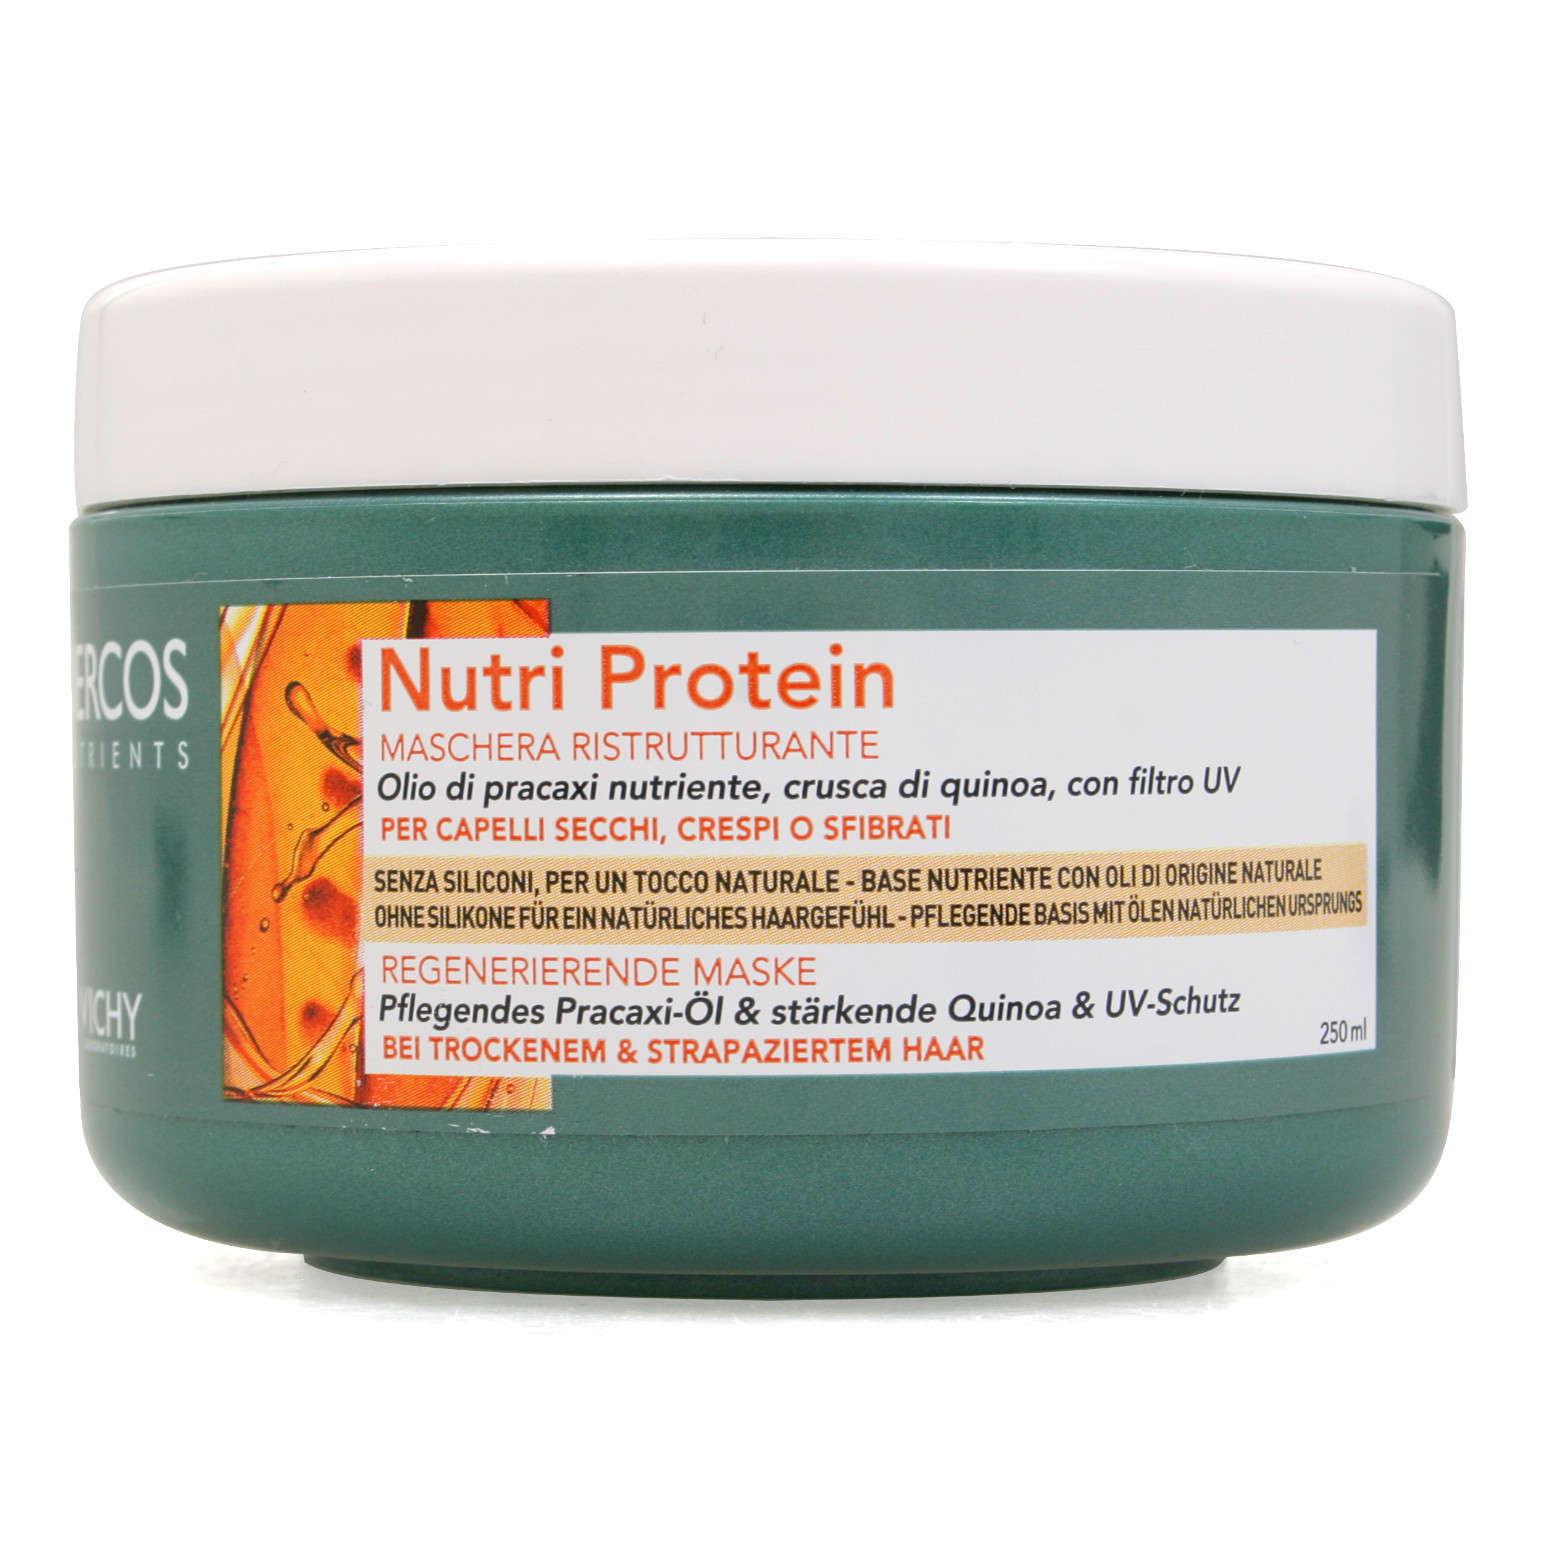 Dercos Nutrients - Nutri Protein maschera ristrutturante